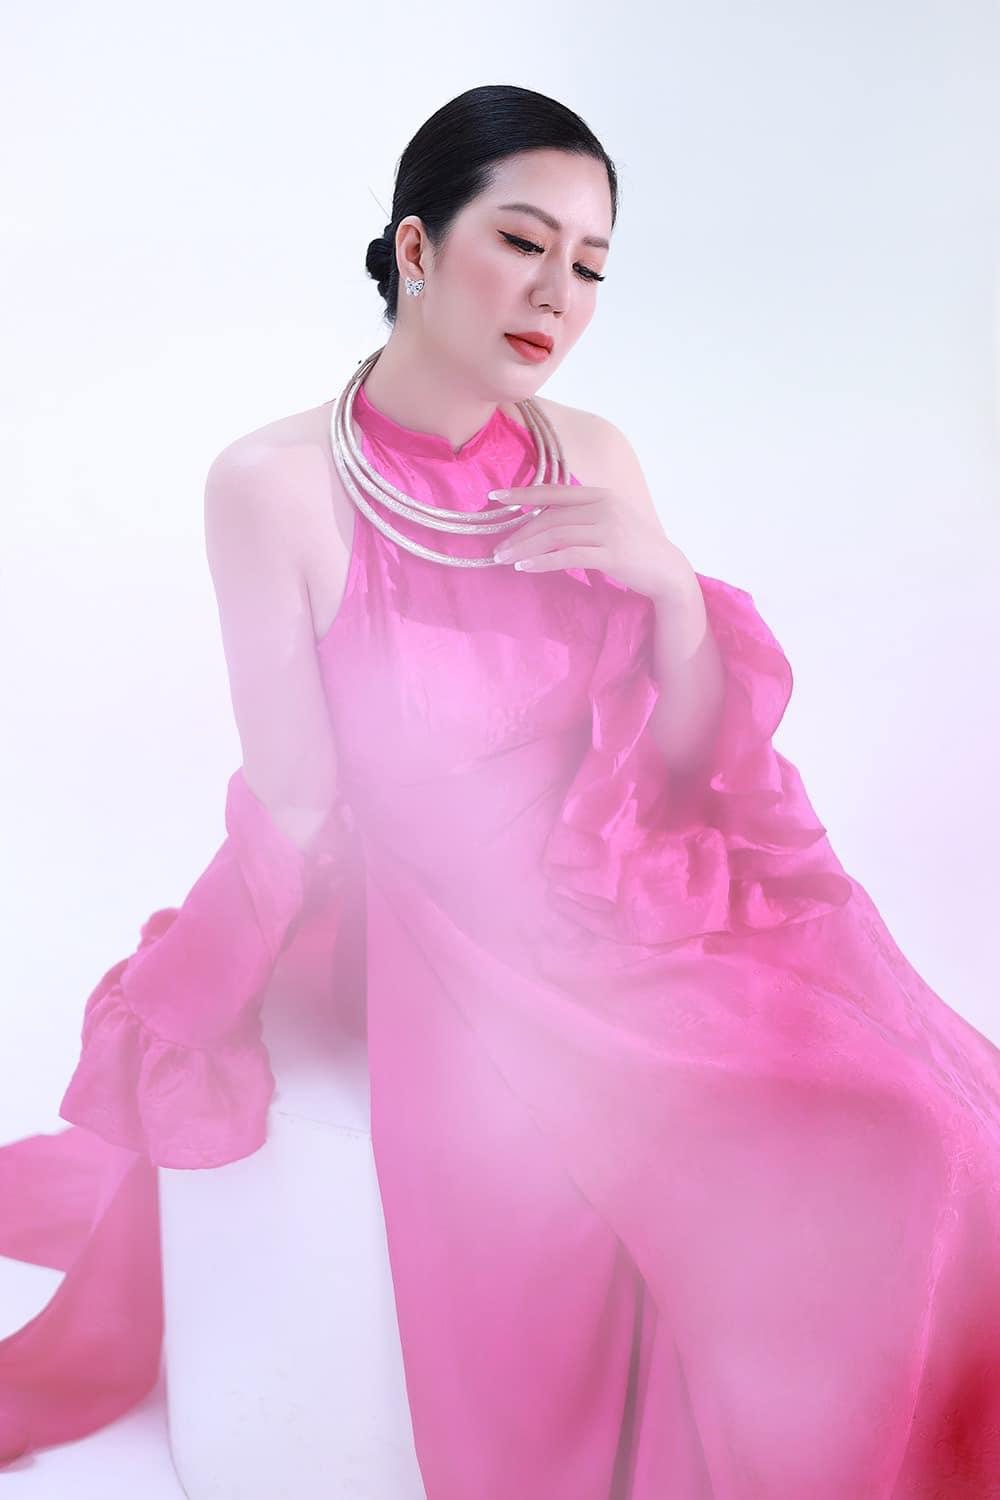 Ca sĩ Đinh Hiền Anh và tình yêu đặc biệt với trang phục truyền thống Việt  - Ảnh 10.